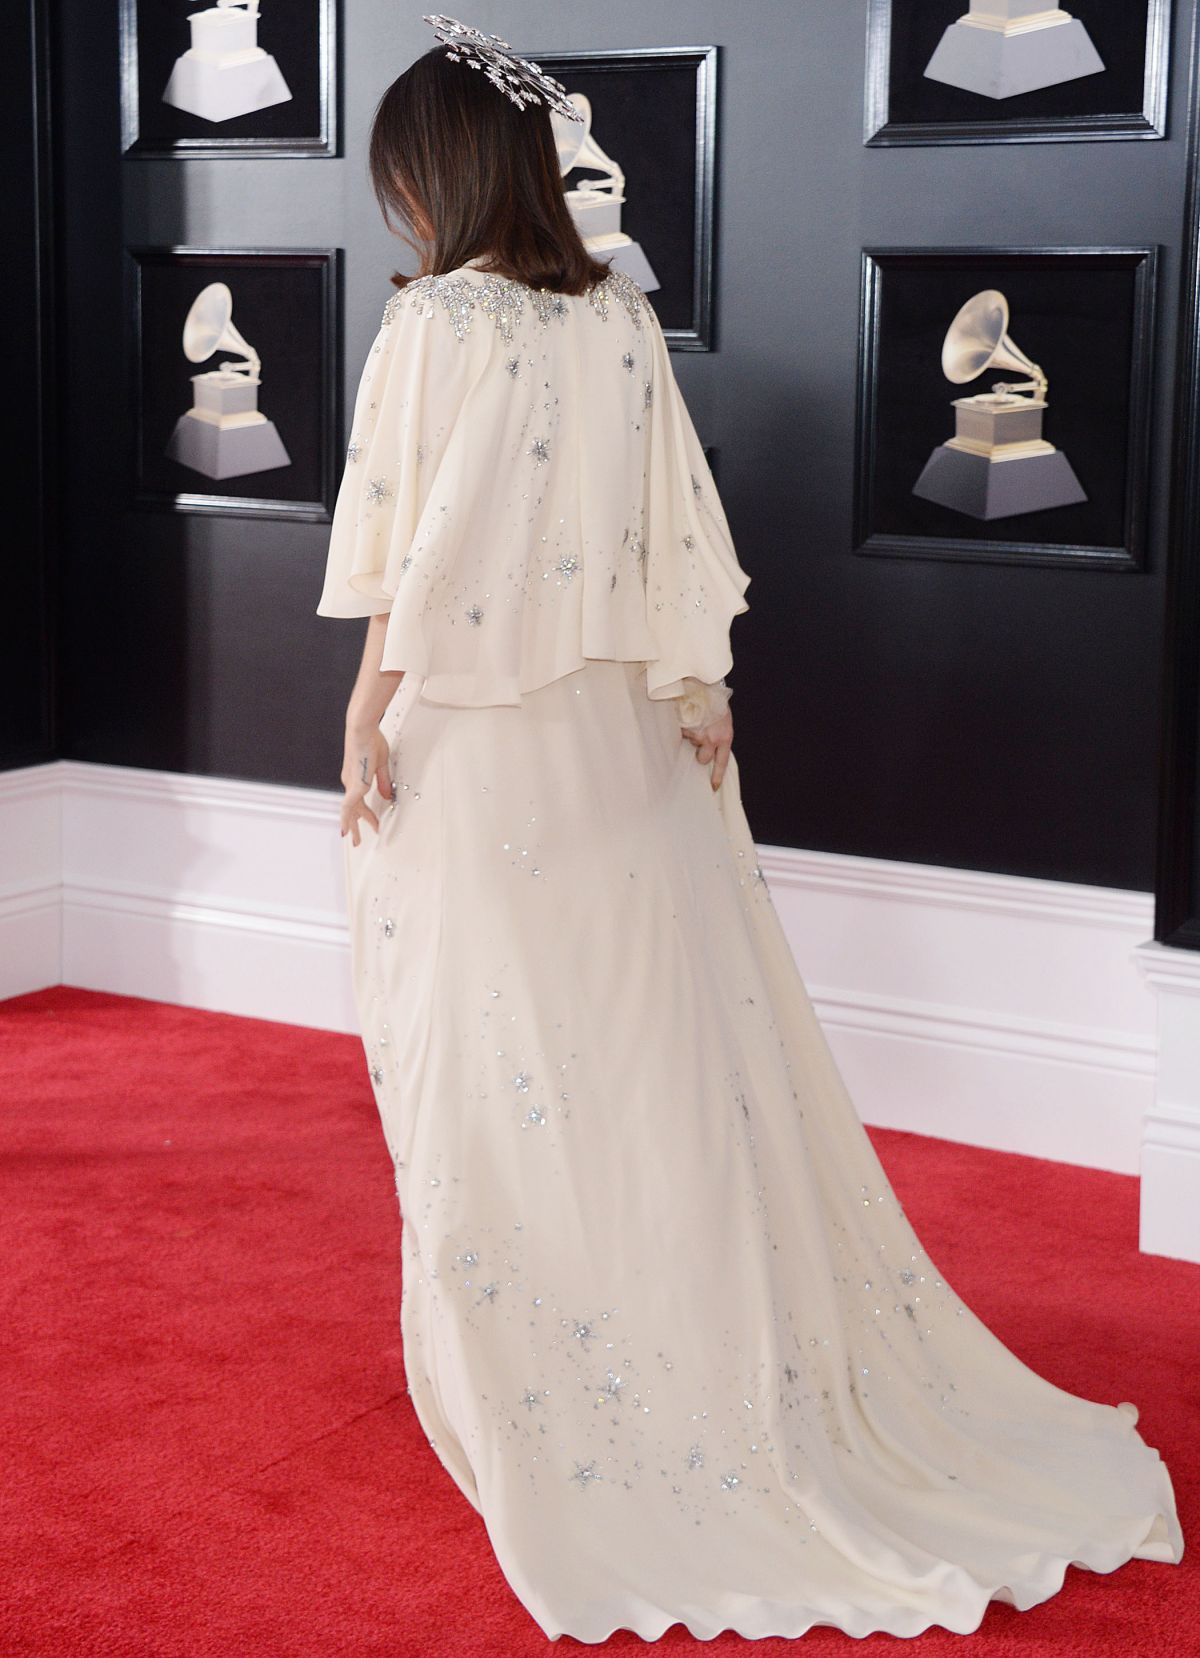 Lana Del Rey at Grammy 2018 Awards in New York 01/28/2018